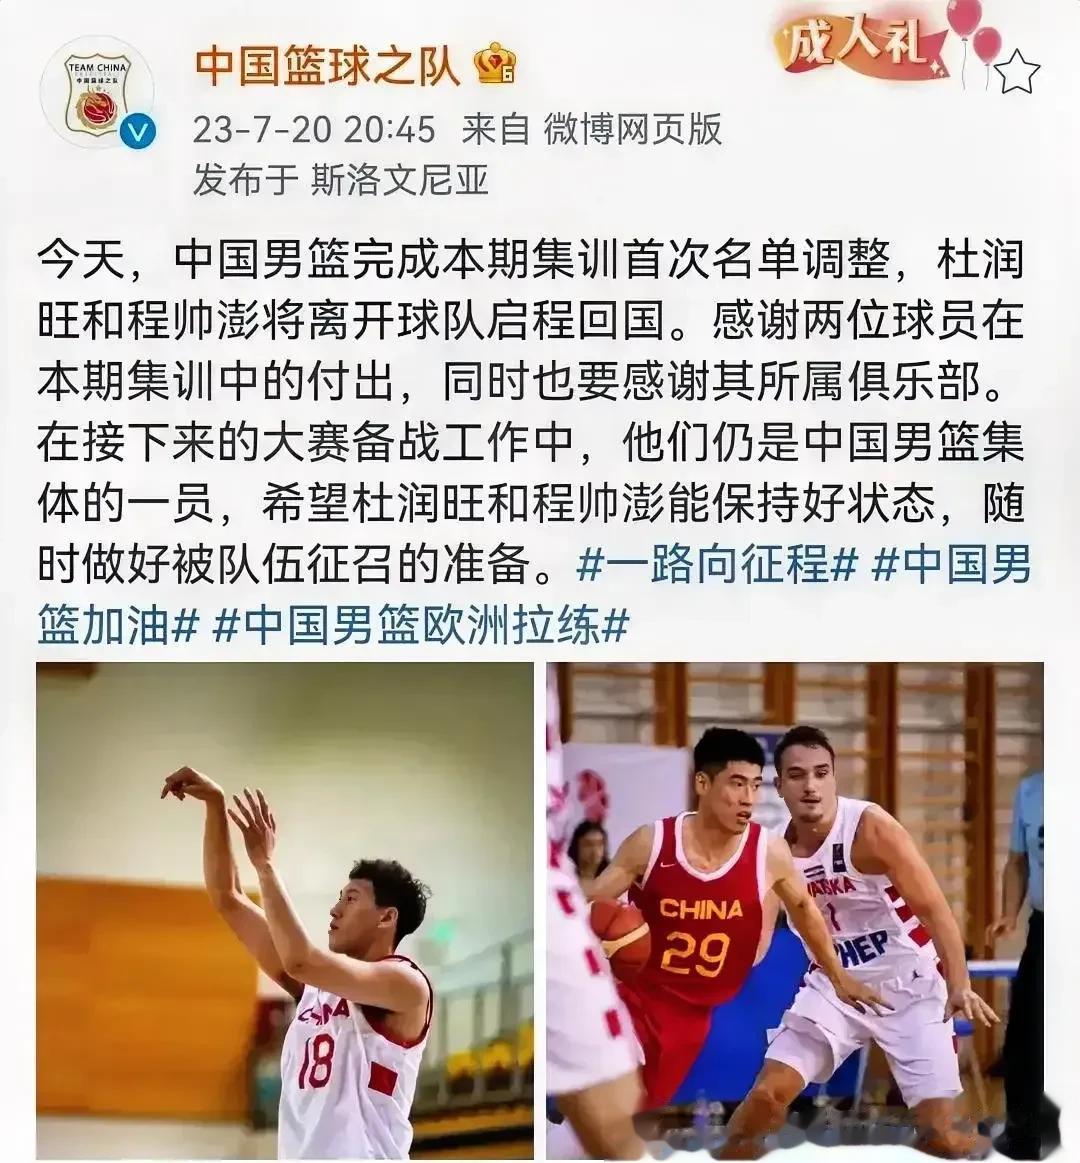 昨天男篮发布消息说杜润旺和程帅澎先暂时离队，这让我们能认清三个事实。

1:国家(1)